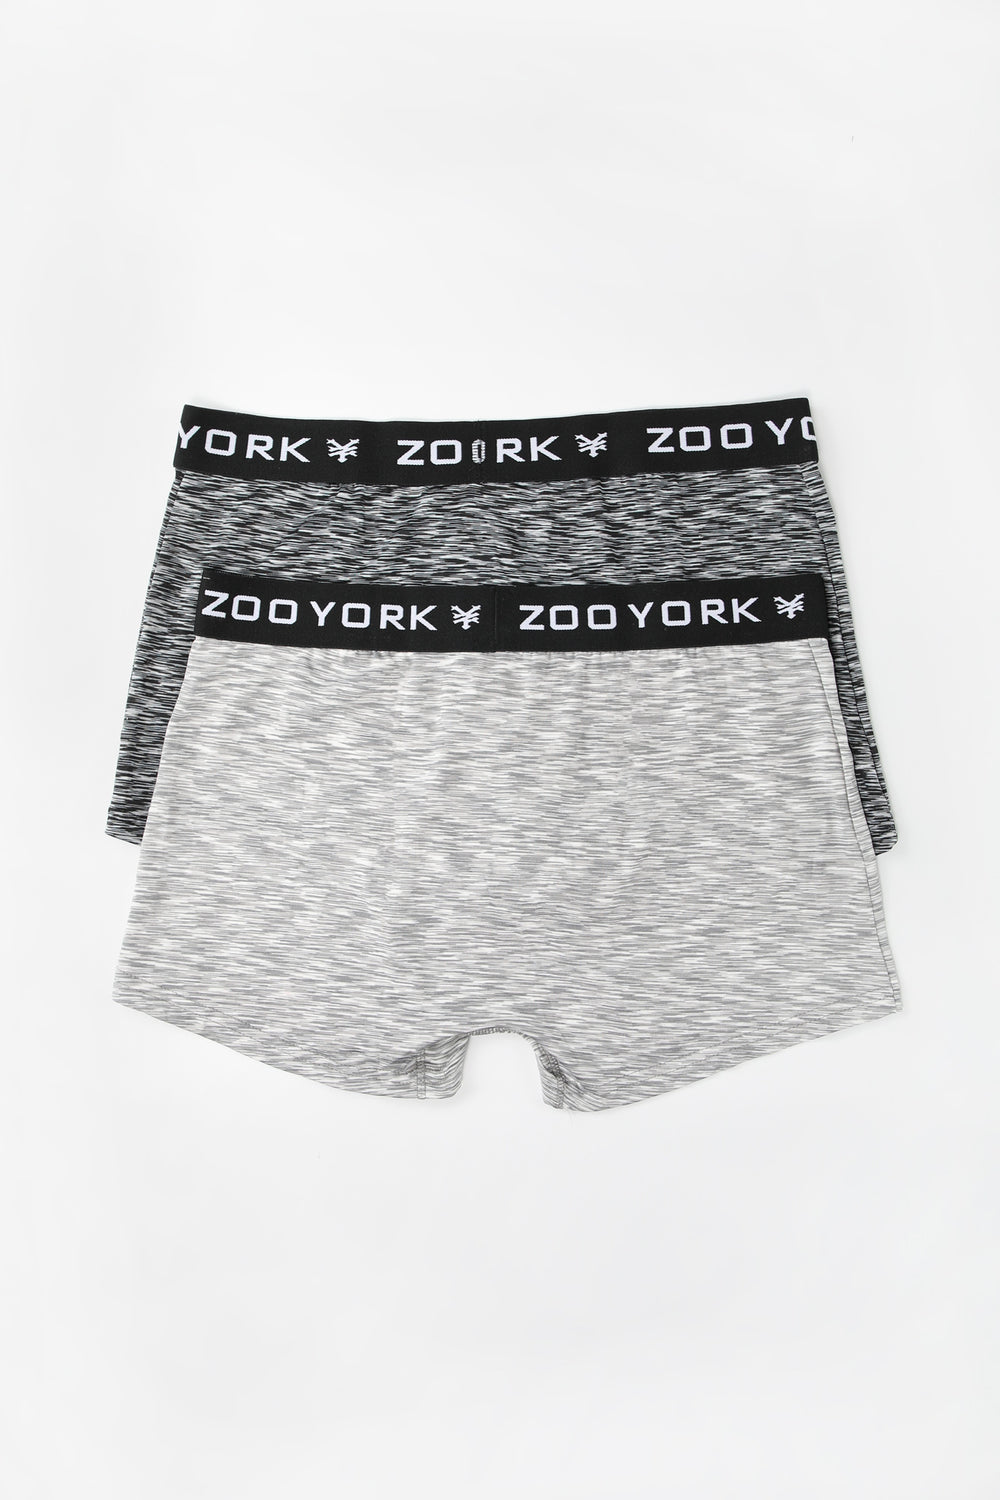 2 Paires de Boxers Space Dye Zoo York Homme Noir